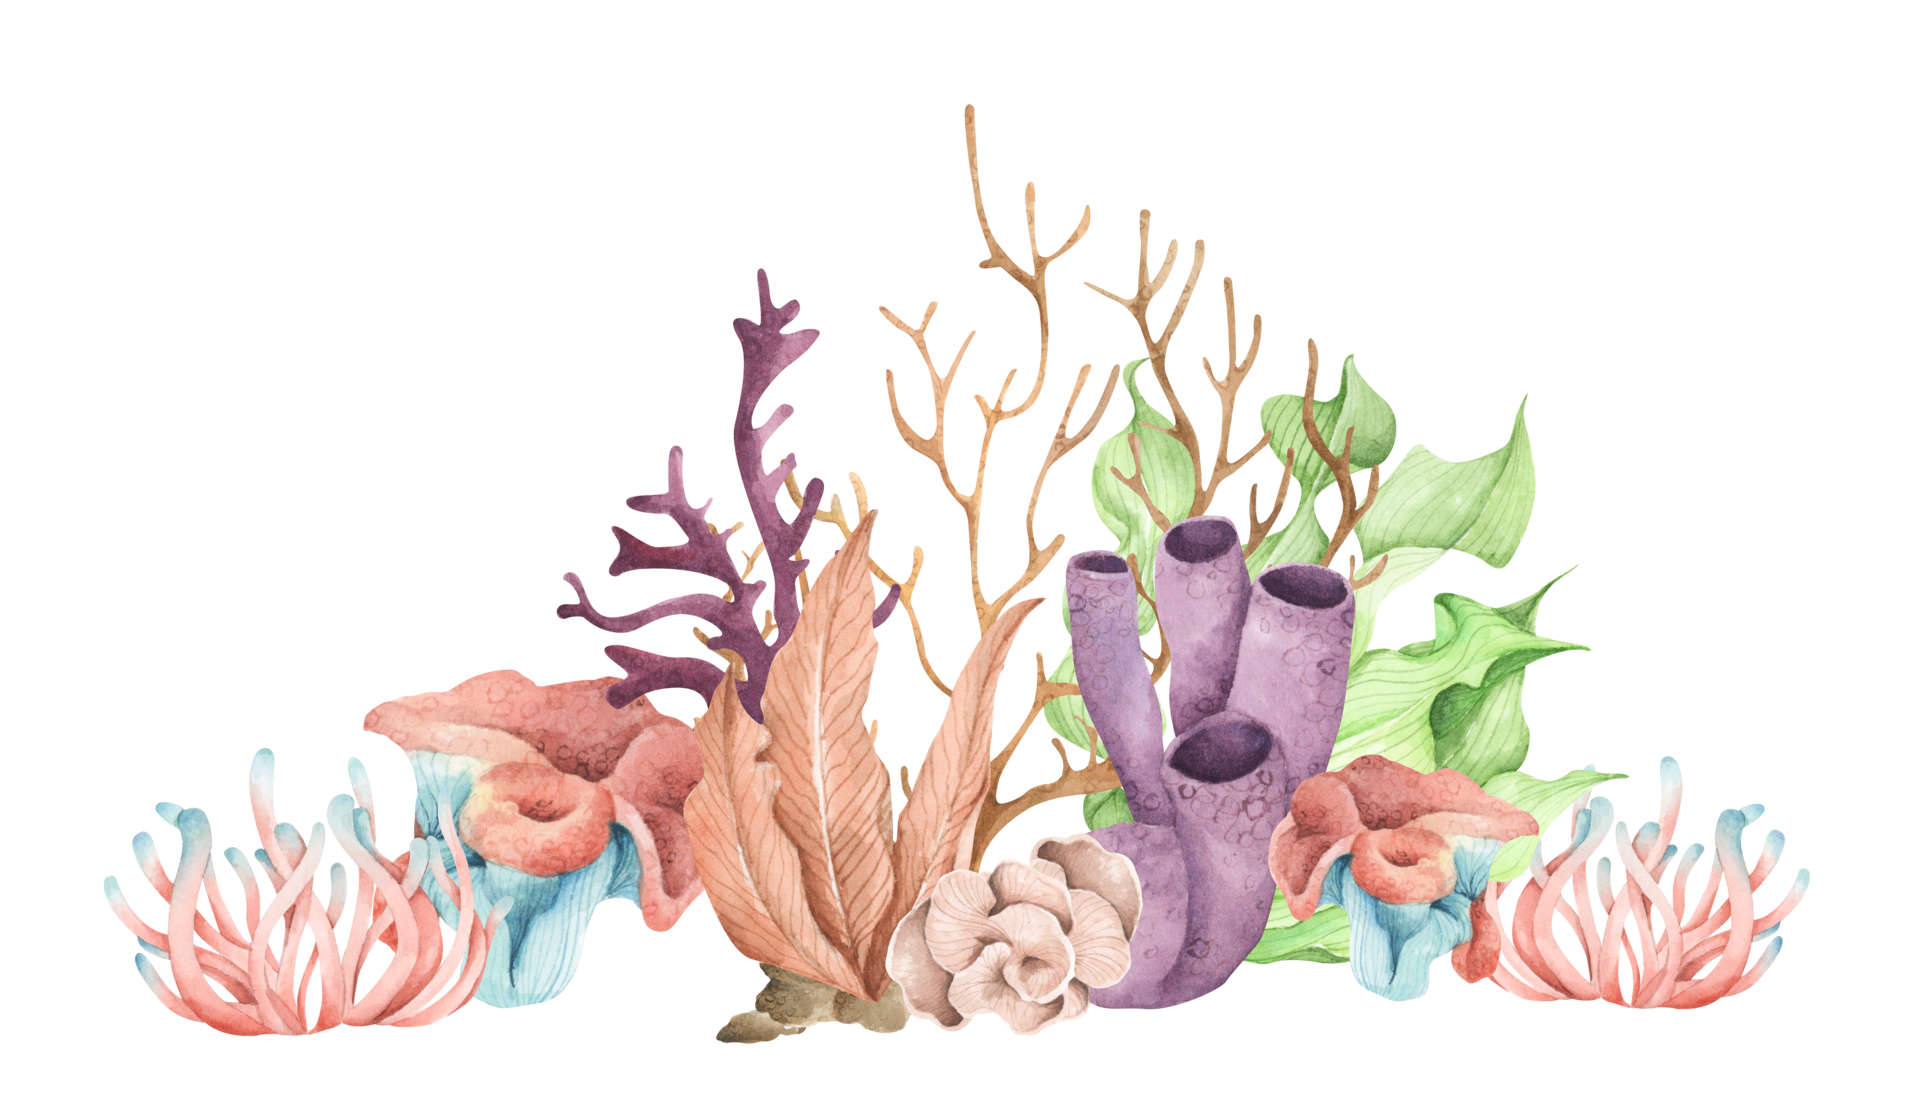 Tảo biển miễn phí là một cách tuyệt vời để biết thêm về loài sinh vật này và tìm hiểu cách chúng có thể giúp duy trì hệ sinh thái đại dương. Chúng tôi cung cấp một bộ sưu tập các hình ảnh sinh động và đa dạng về tảo biển, đảm bảo mang lại cho bạn thú vị và kiến thức bổ ích.